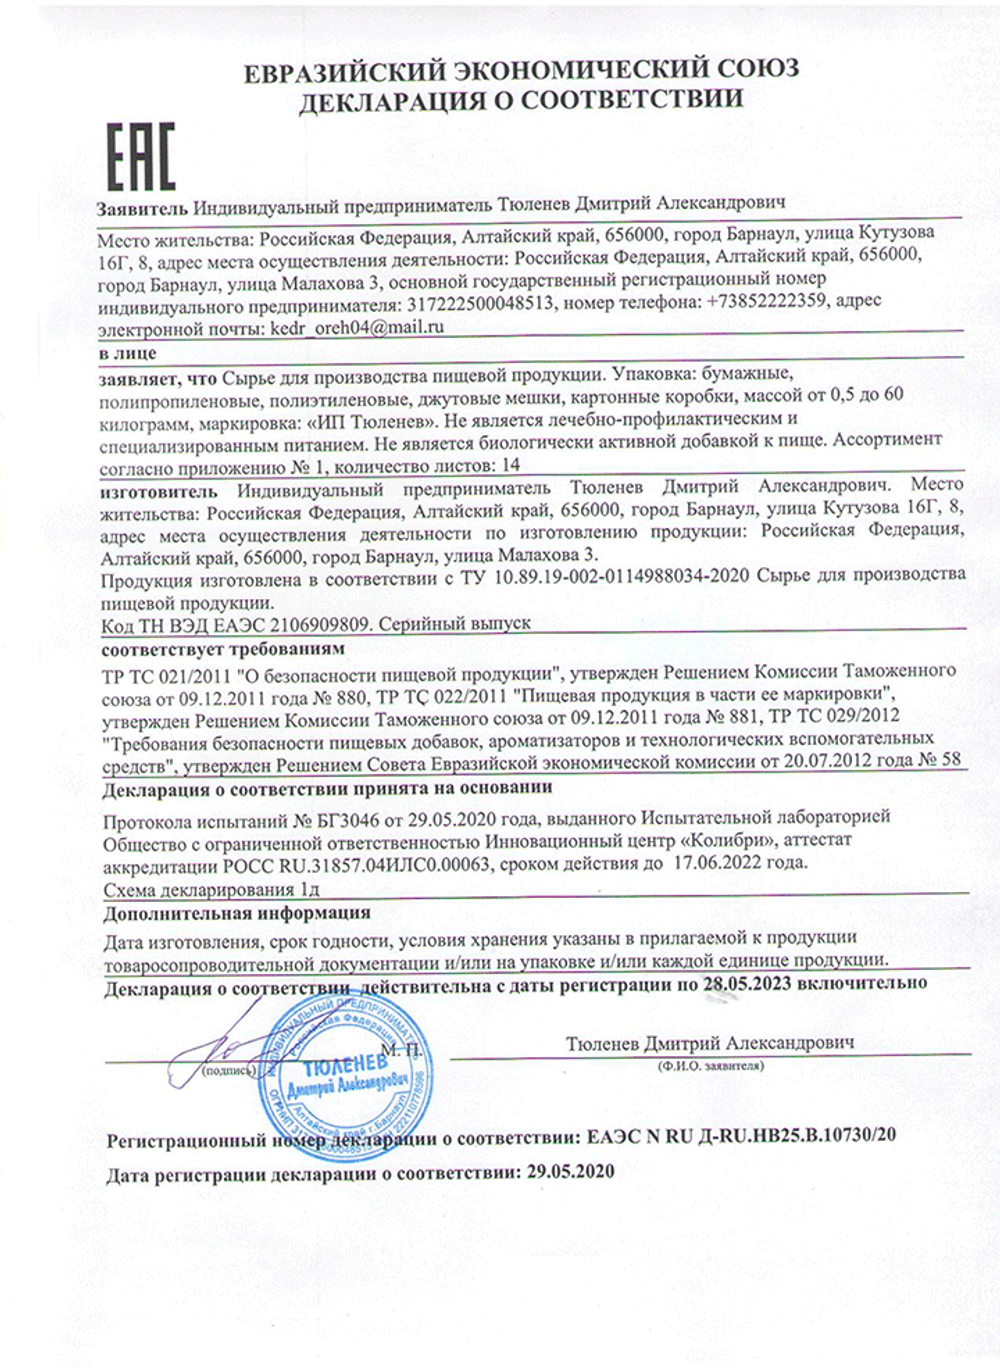 Изображение сертификата соответствия травы Чистотел-adonnis.ru